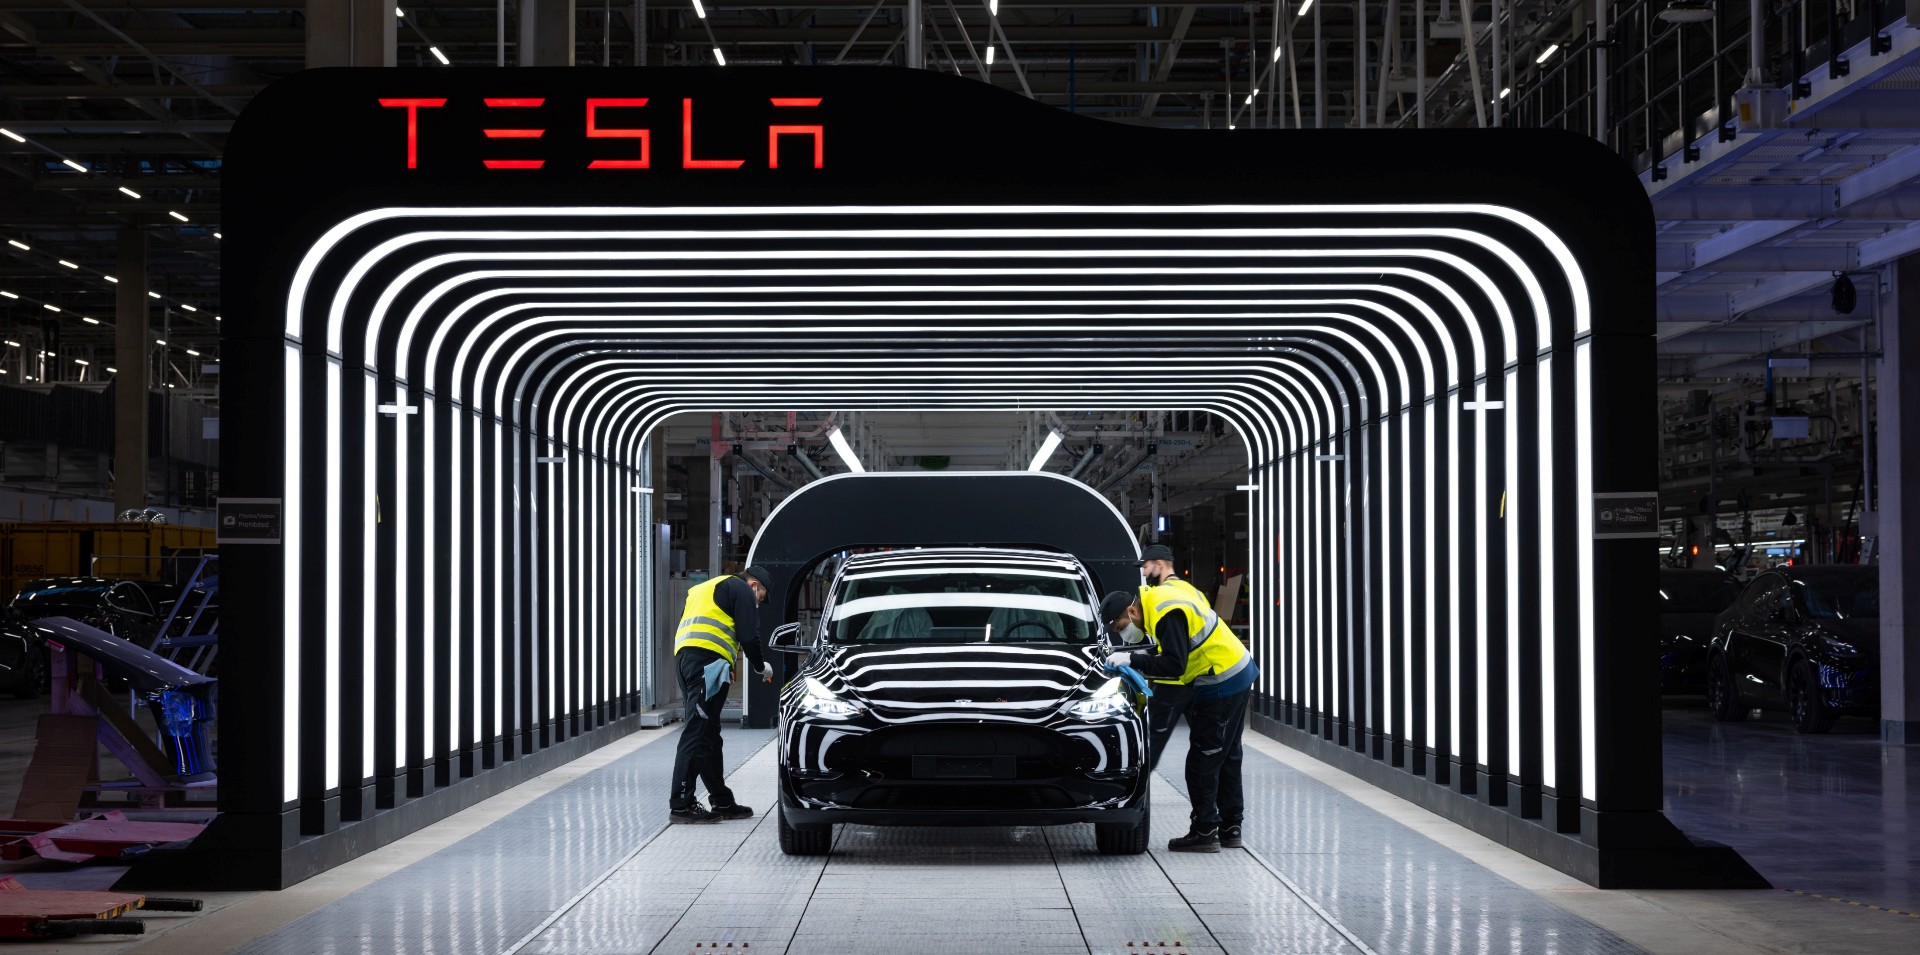 Tesla is nu winstgevender dan Ford en General Motors, ondanks de verkoop van veel minder auto’s in het eerste kwartaal